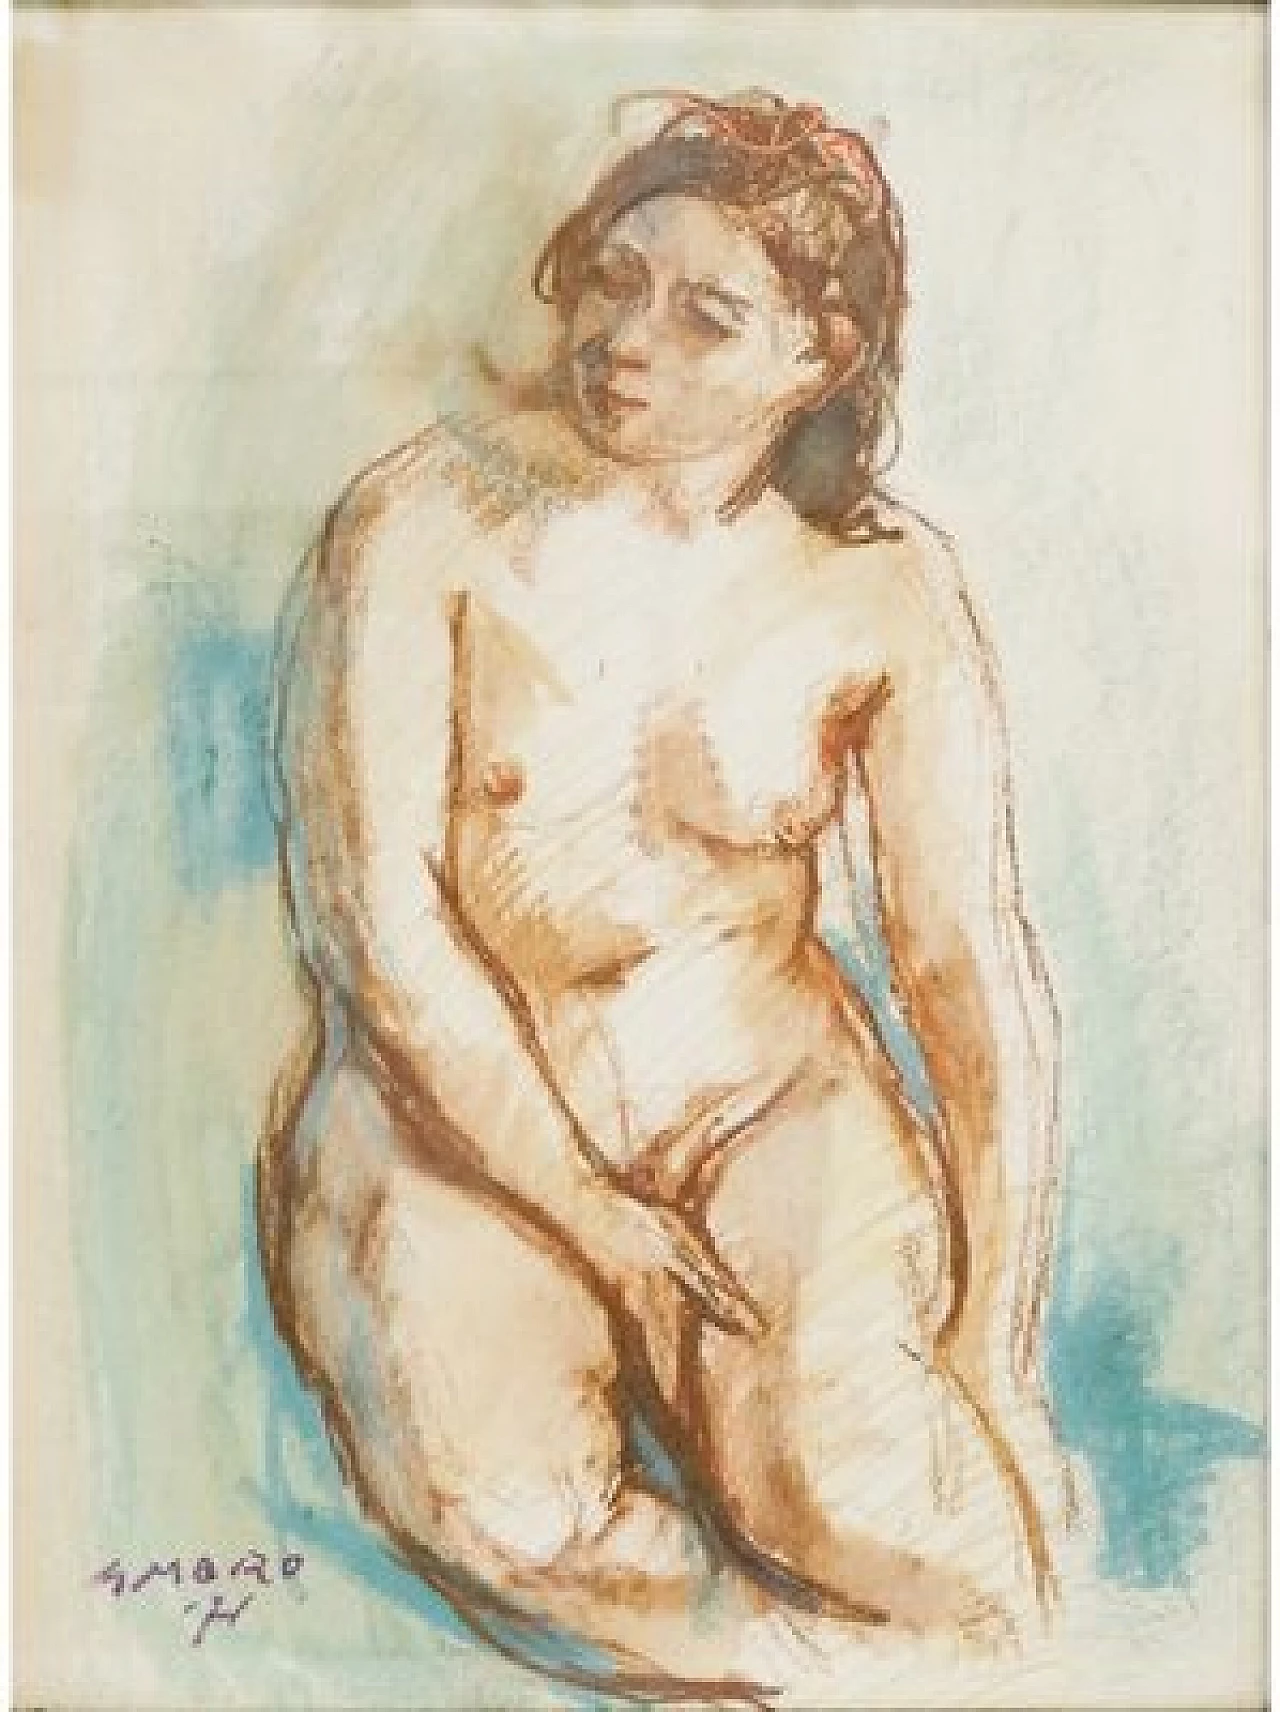 Moro, nudo femminile seduto, disegno a pastello su cartoncino, 1971 1